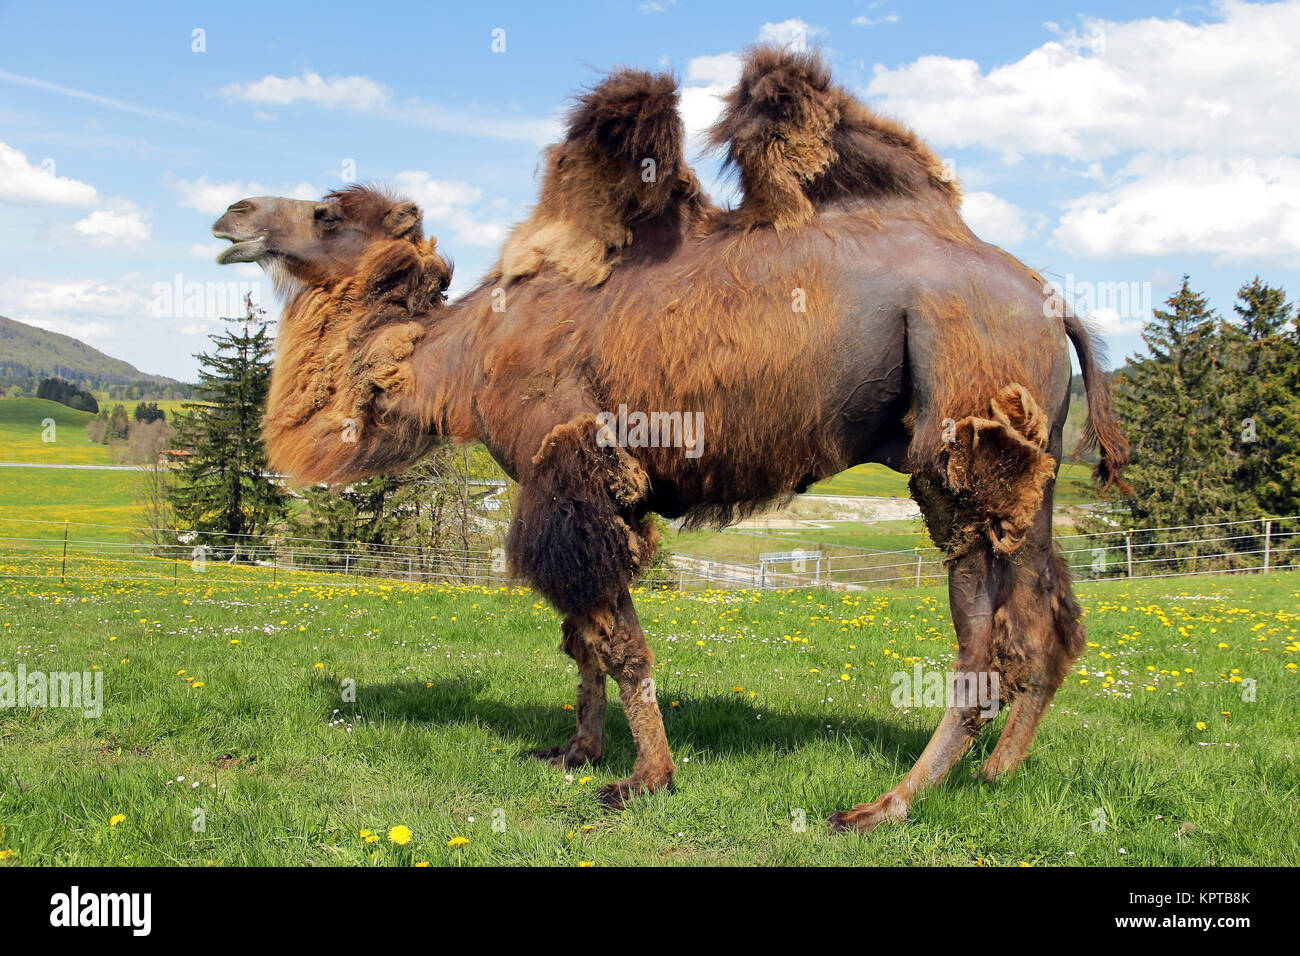 a female trampler,a two-humped camel in bavaria (allgÃ¤u) Stock Photo